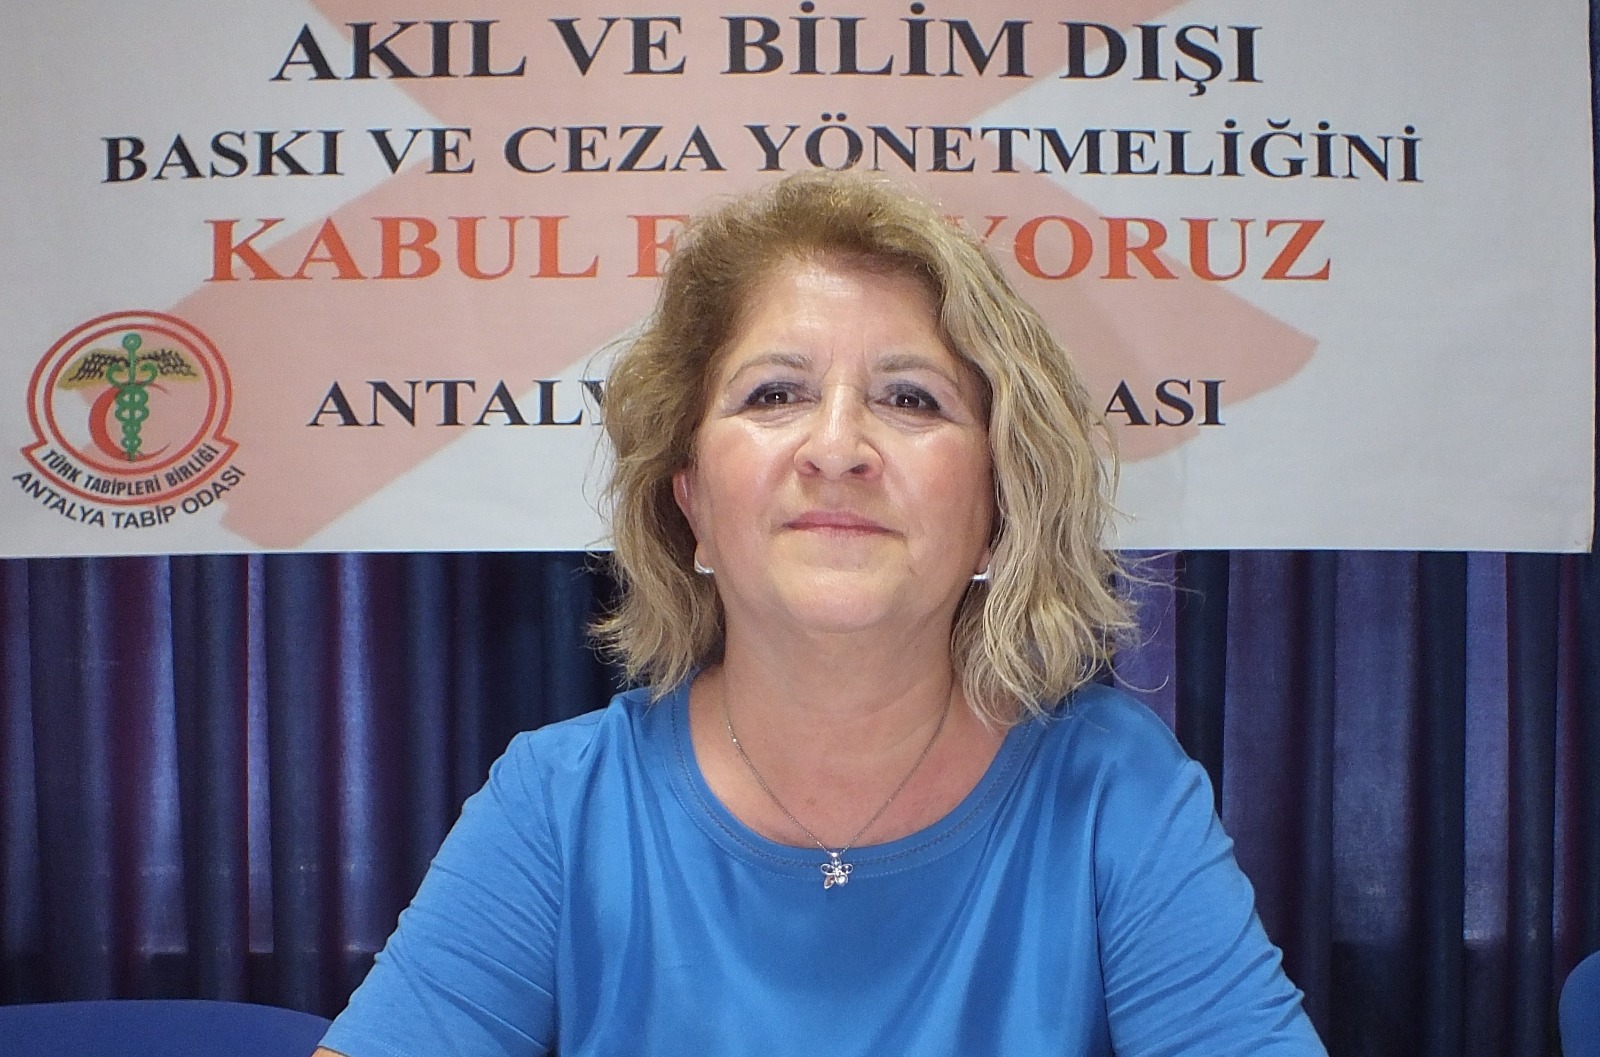 Antalya Tabip Odası basın açıklaması